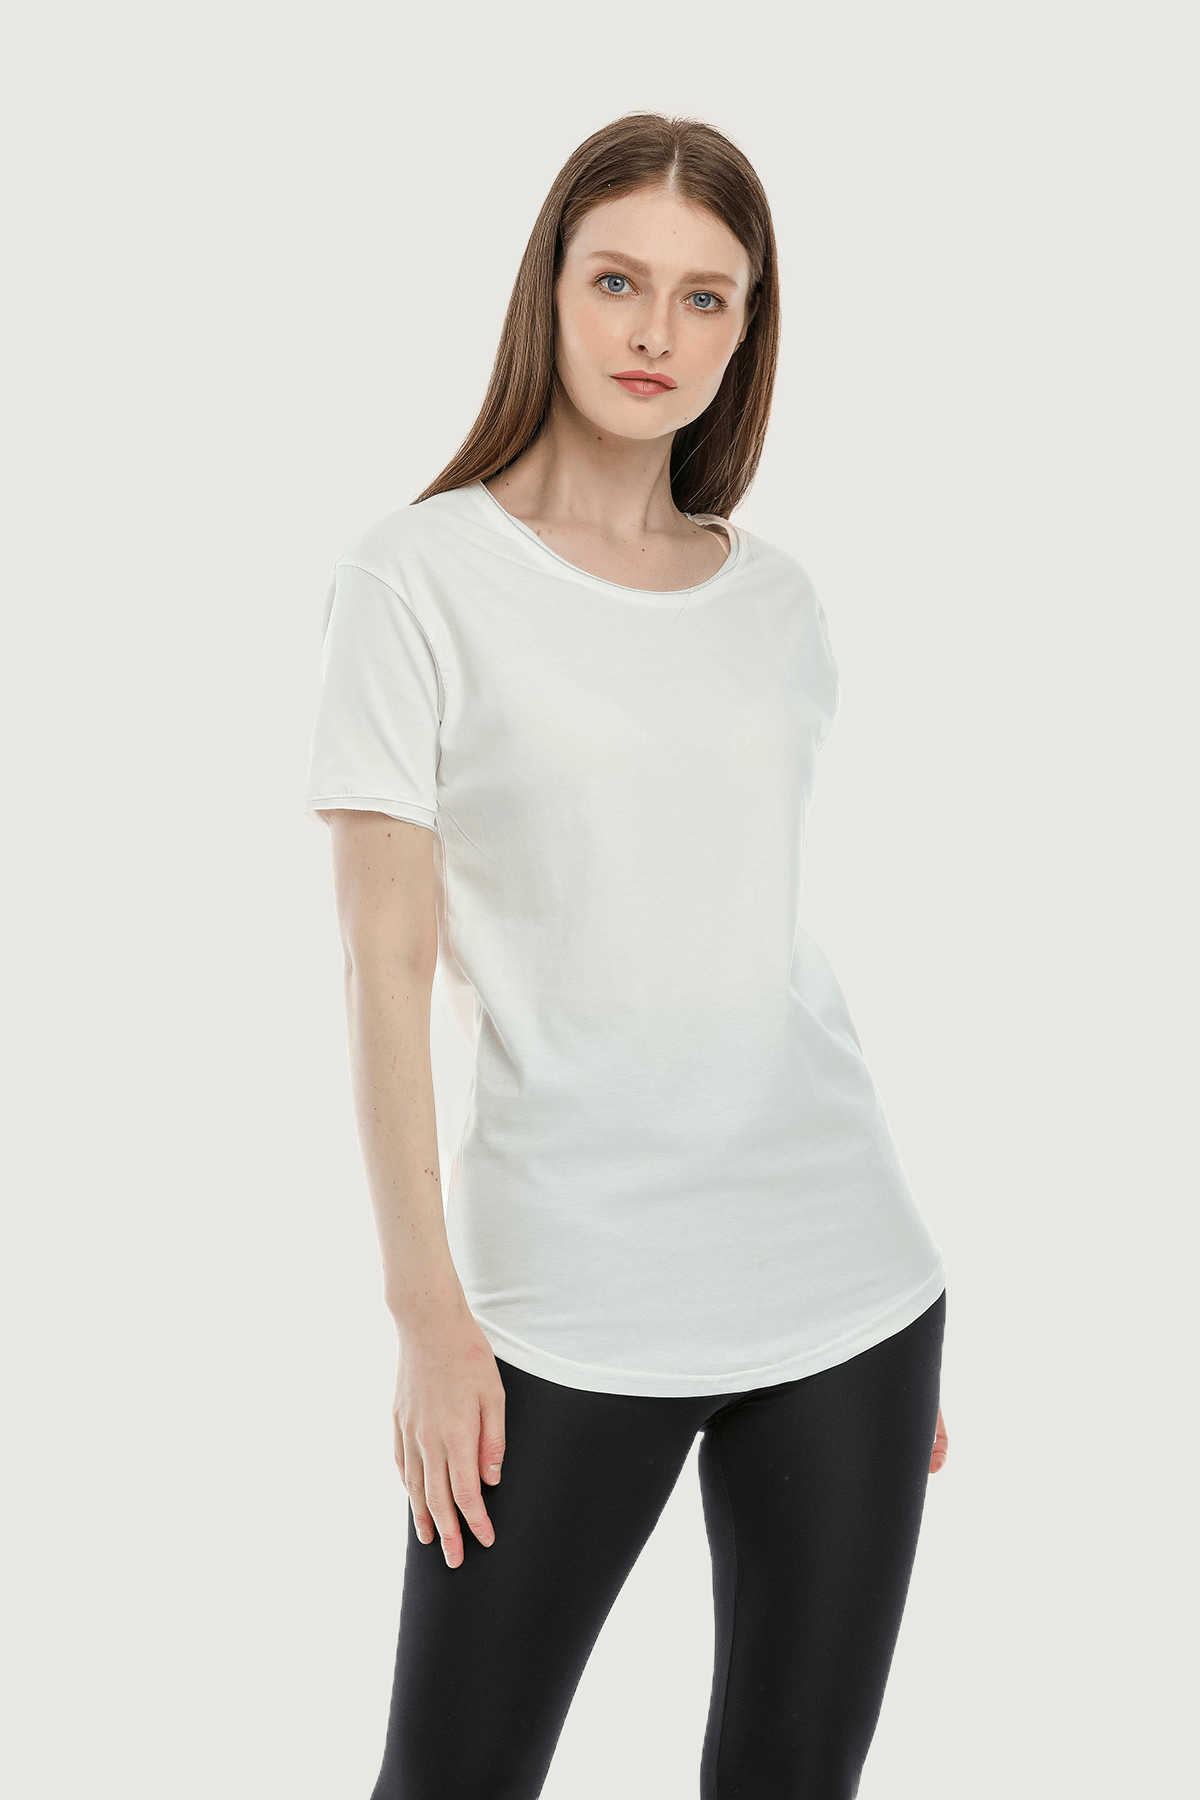 Camiseta básica holgada y cómoda para mujer - Hueso